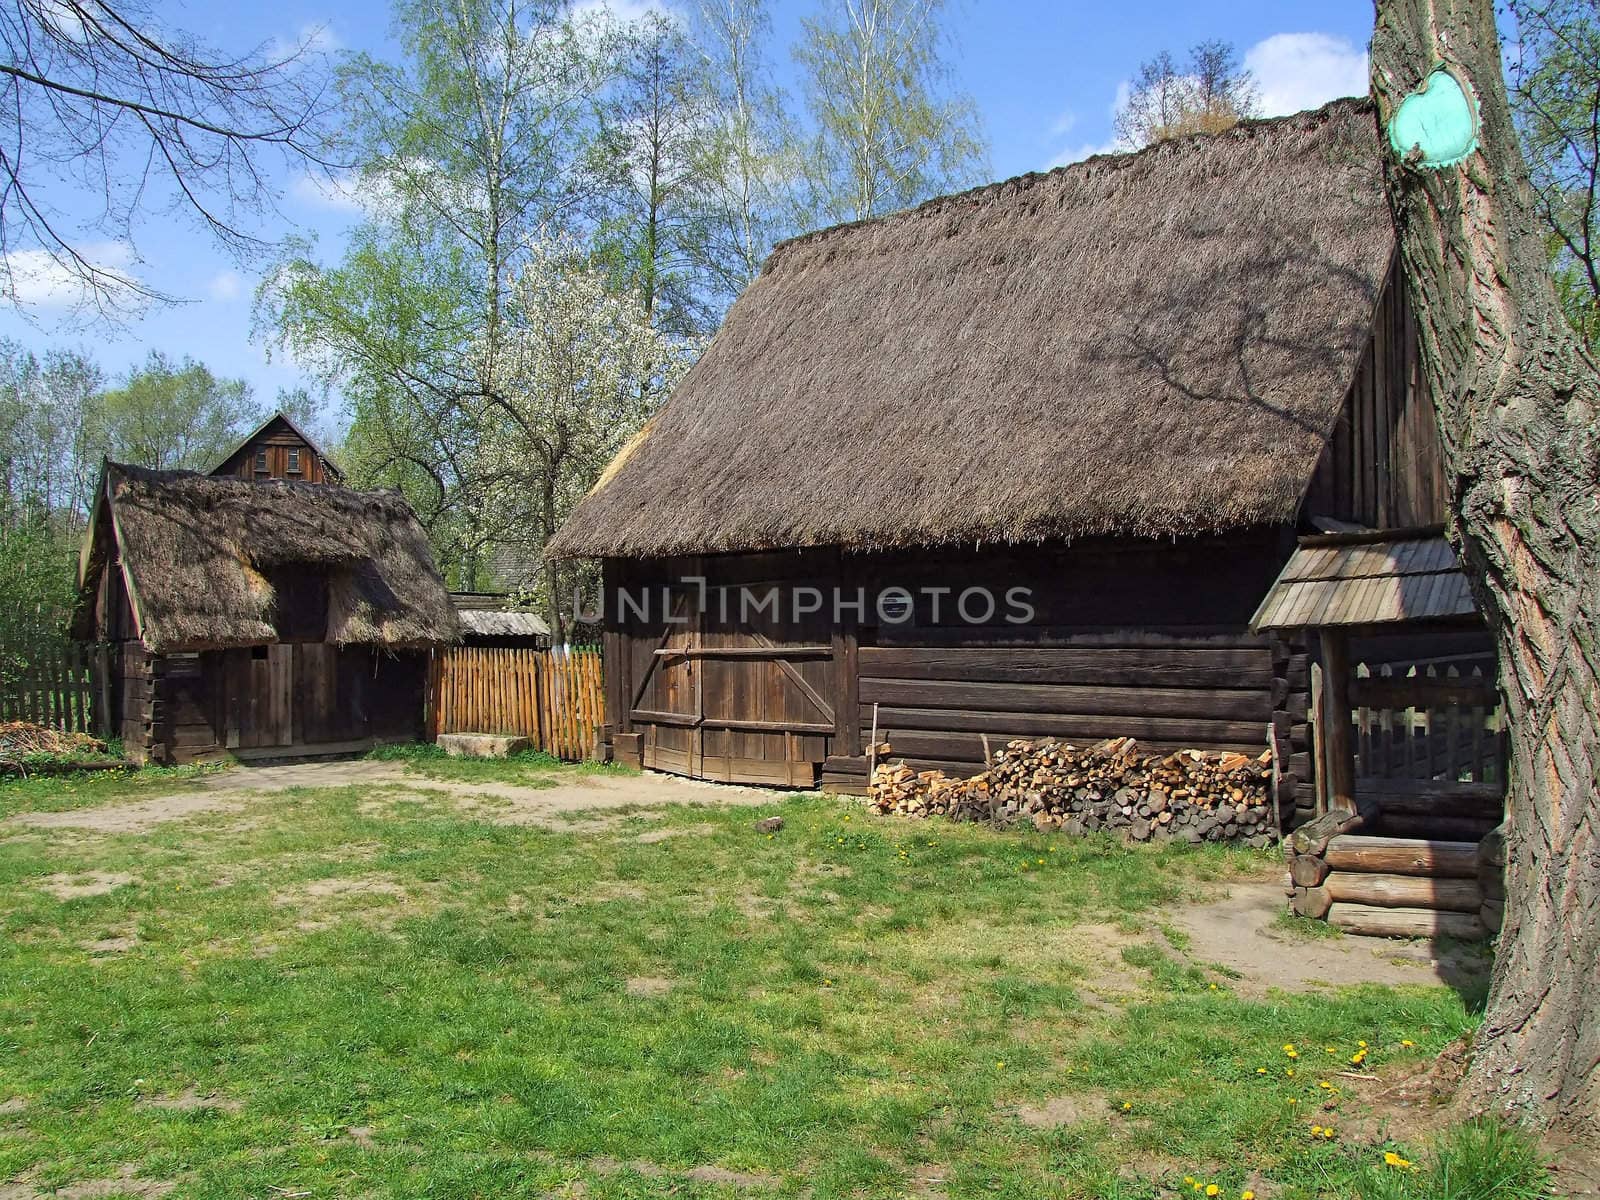 Old wooden hut in village, green grass around by anki21